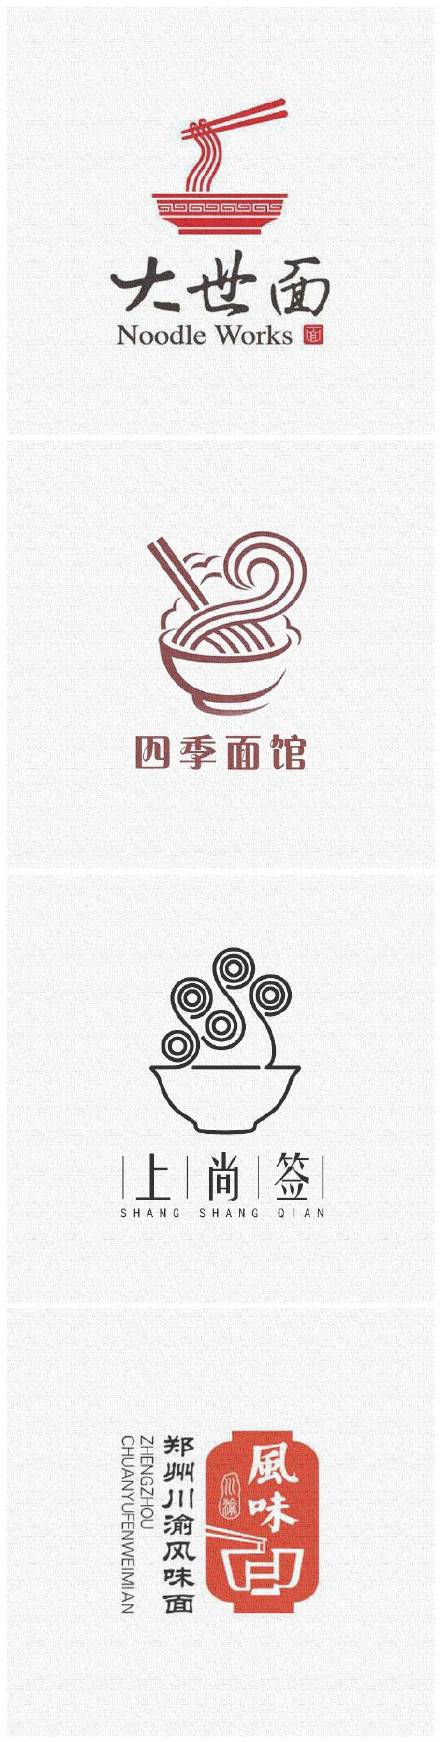 因此logo设计方面,会选择的元素有大碗,面条,麦穗,筷子,这几个常见